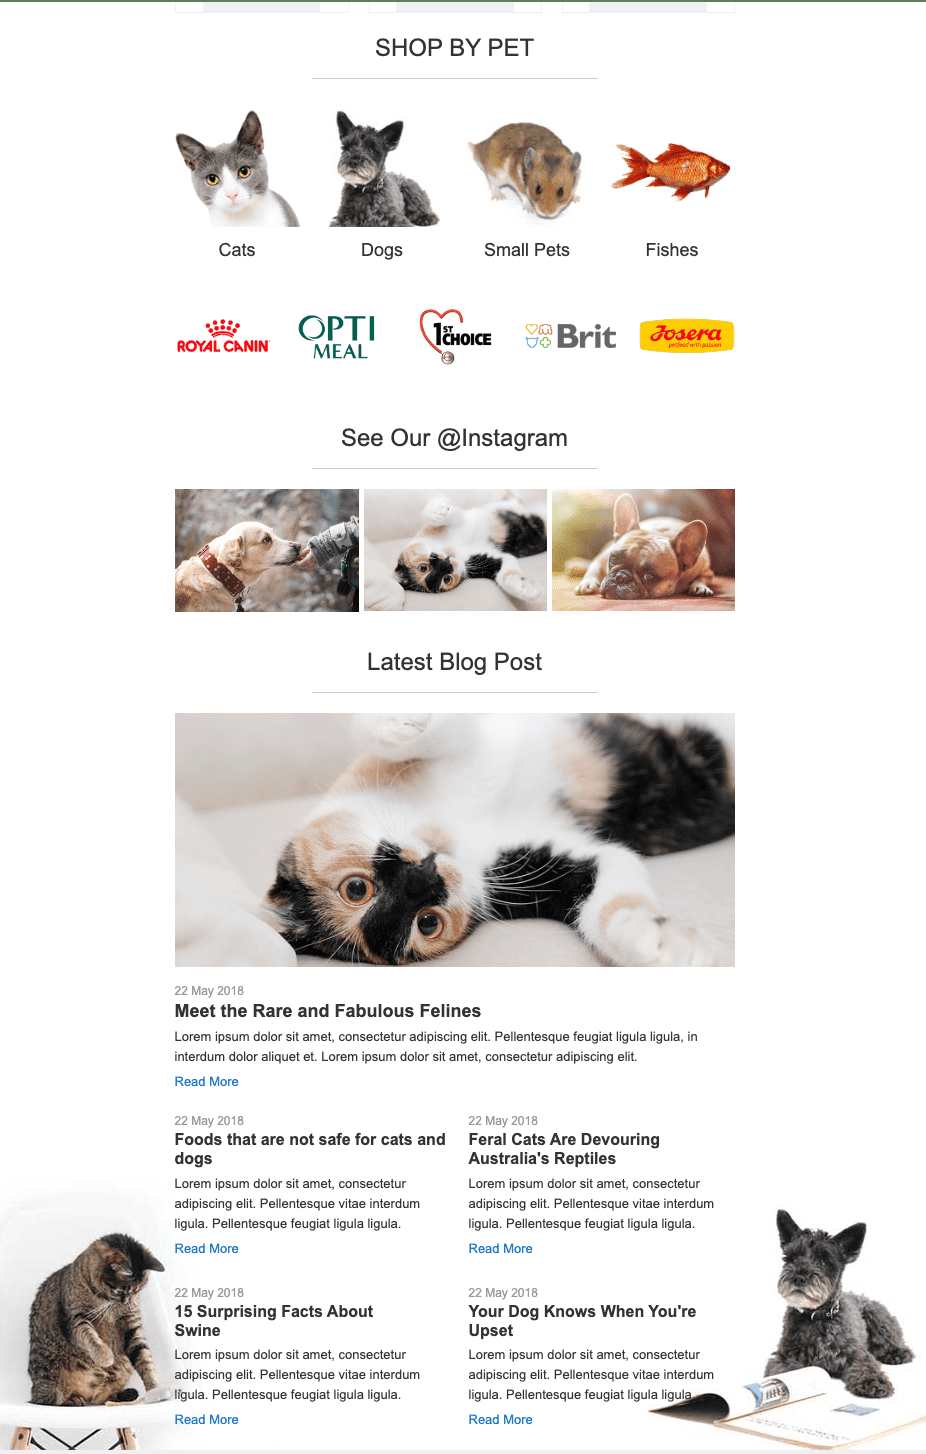 Креативний лист із маркетинговими матеріалами про кошенят та інших тварин